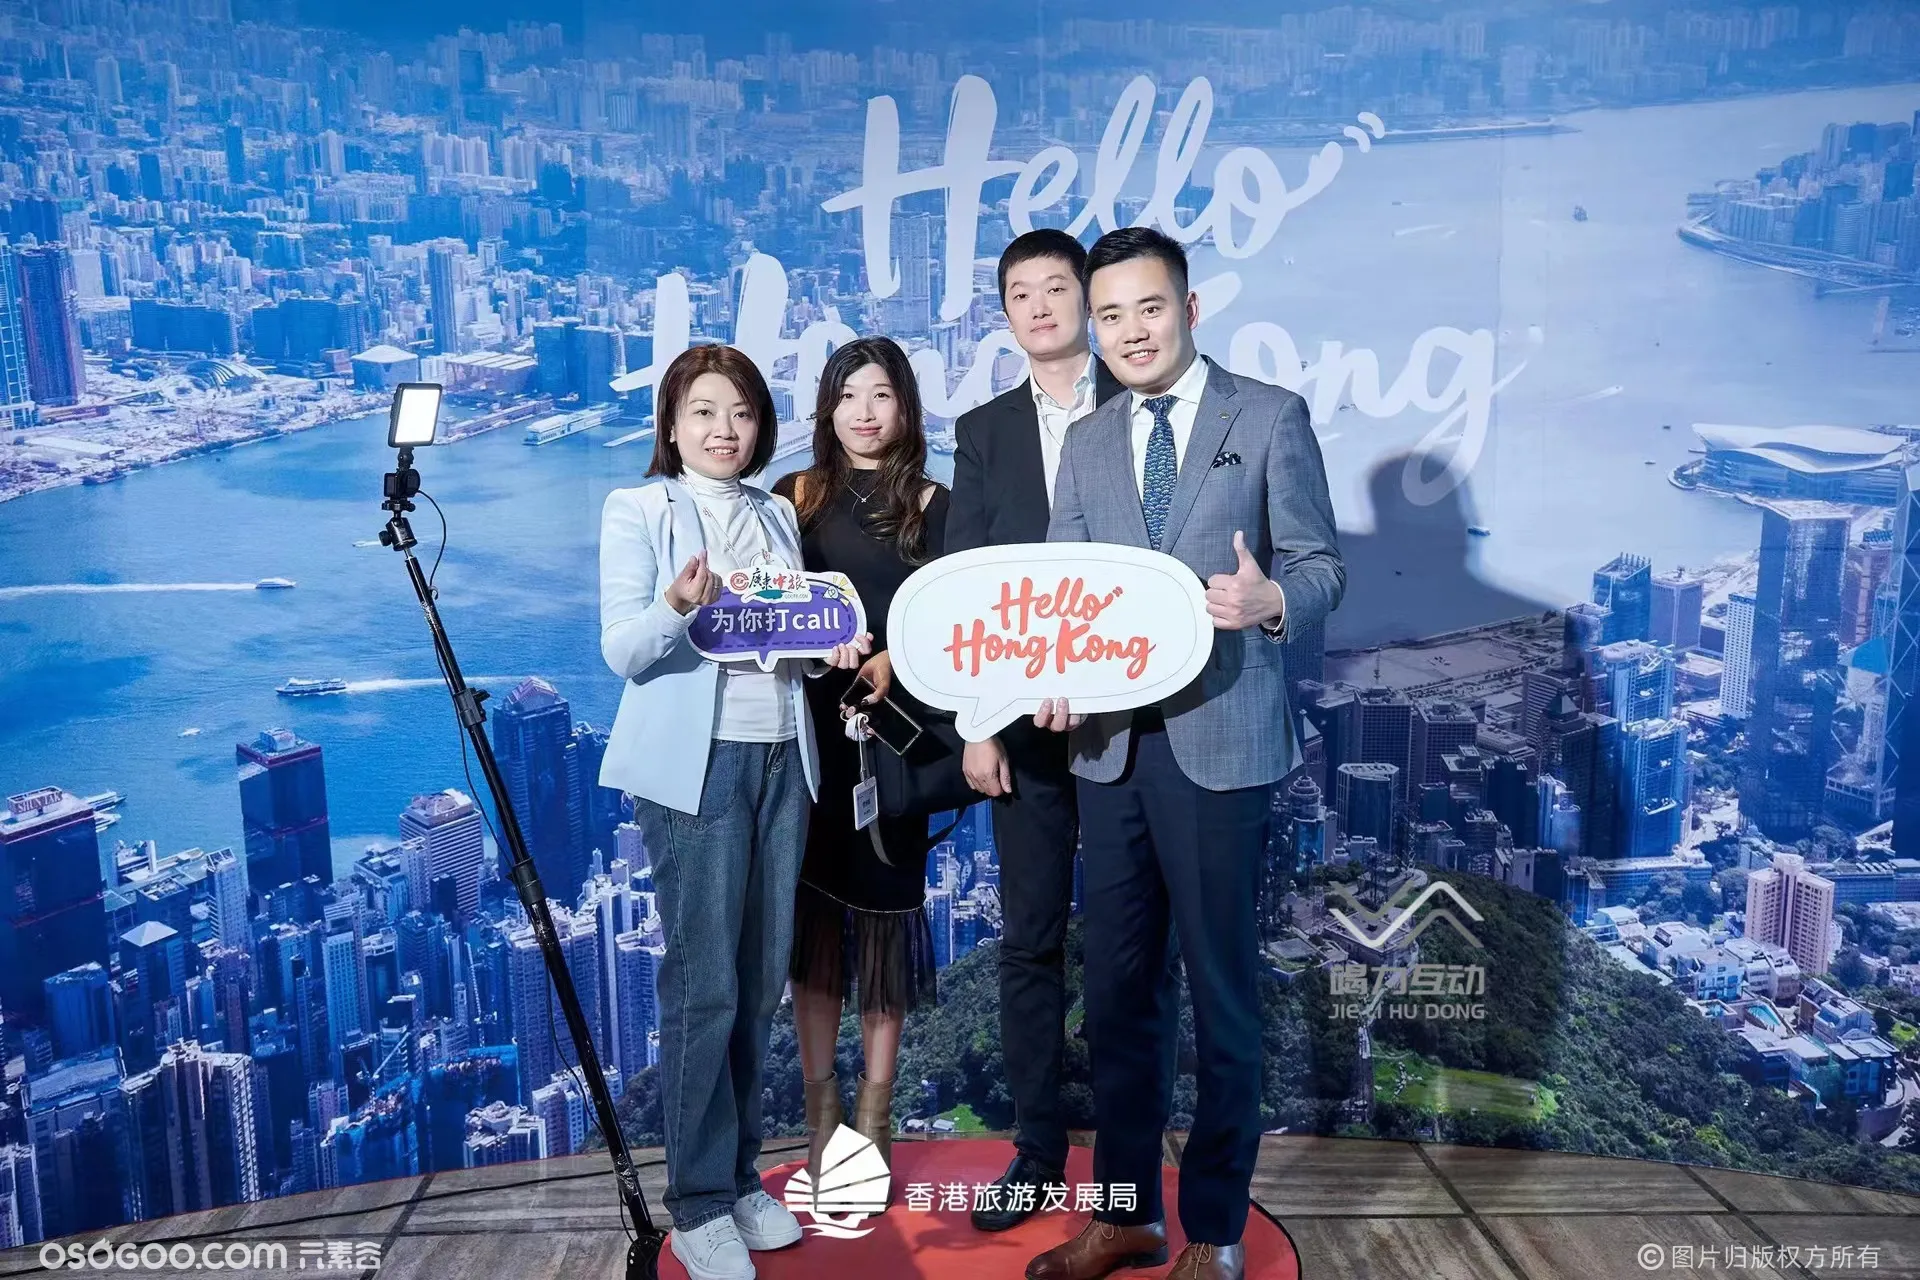 香港旅游发展局活动现场360升格拍照互动装置助力